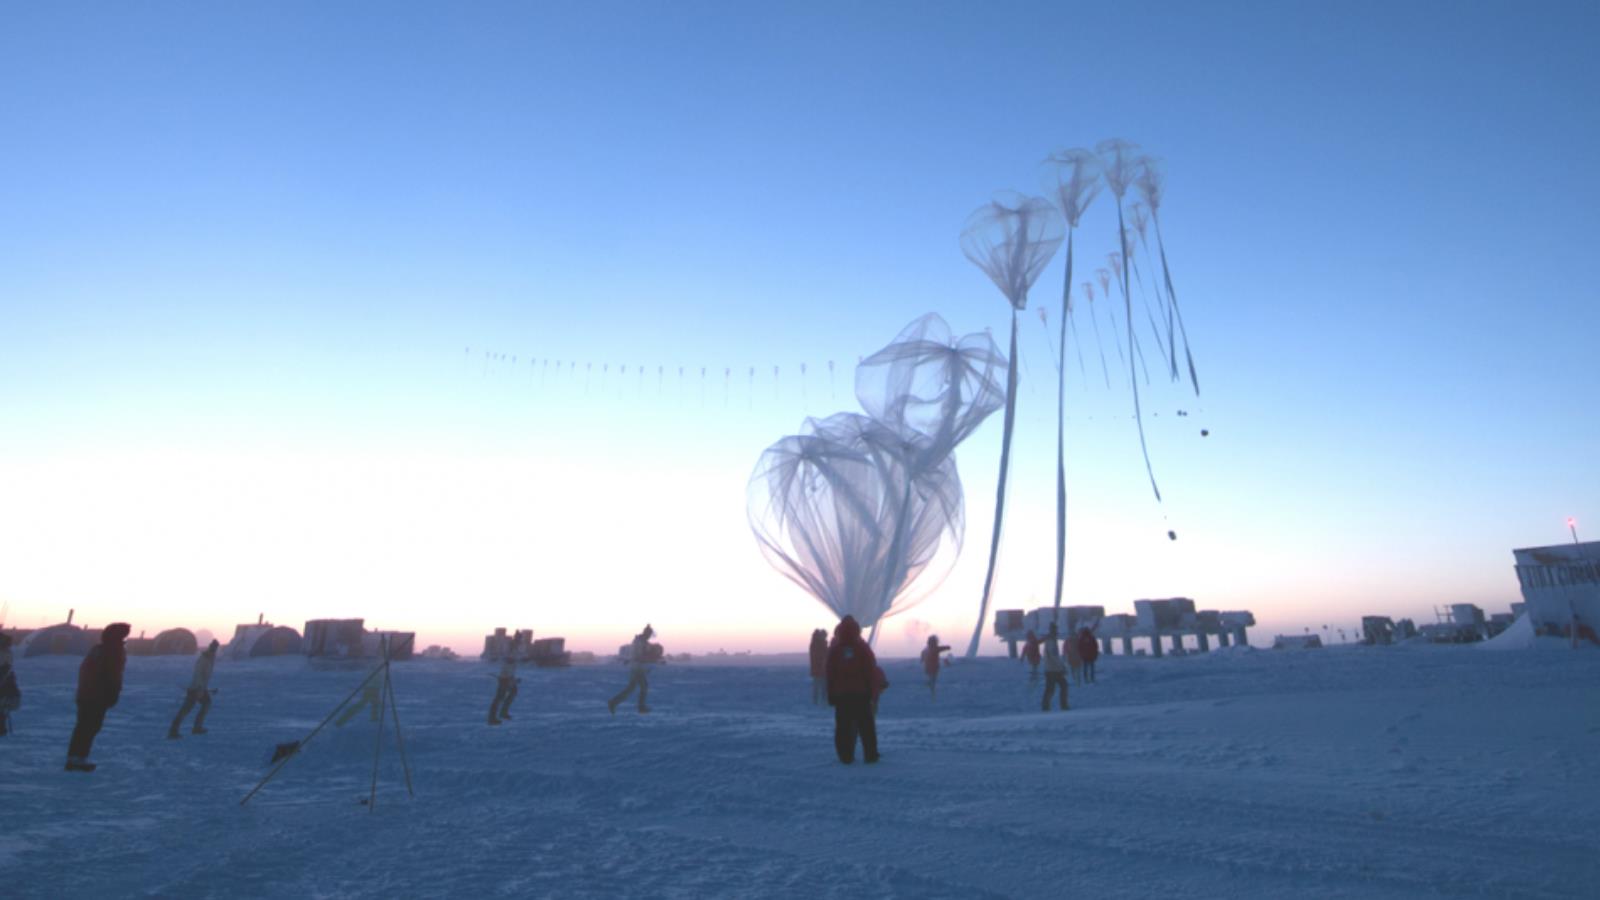 ‪إطلاق بالون الأوزون فوق القارة القطبية الجنوبية‬ إطلاق بالون الأوزون فوق القارة القطبية الجنوبية (مواقع التواصل)